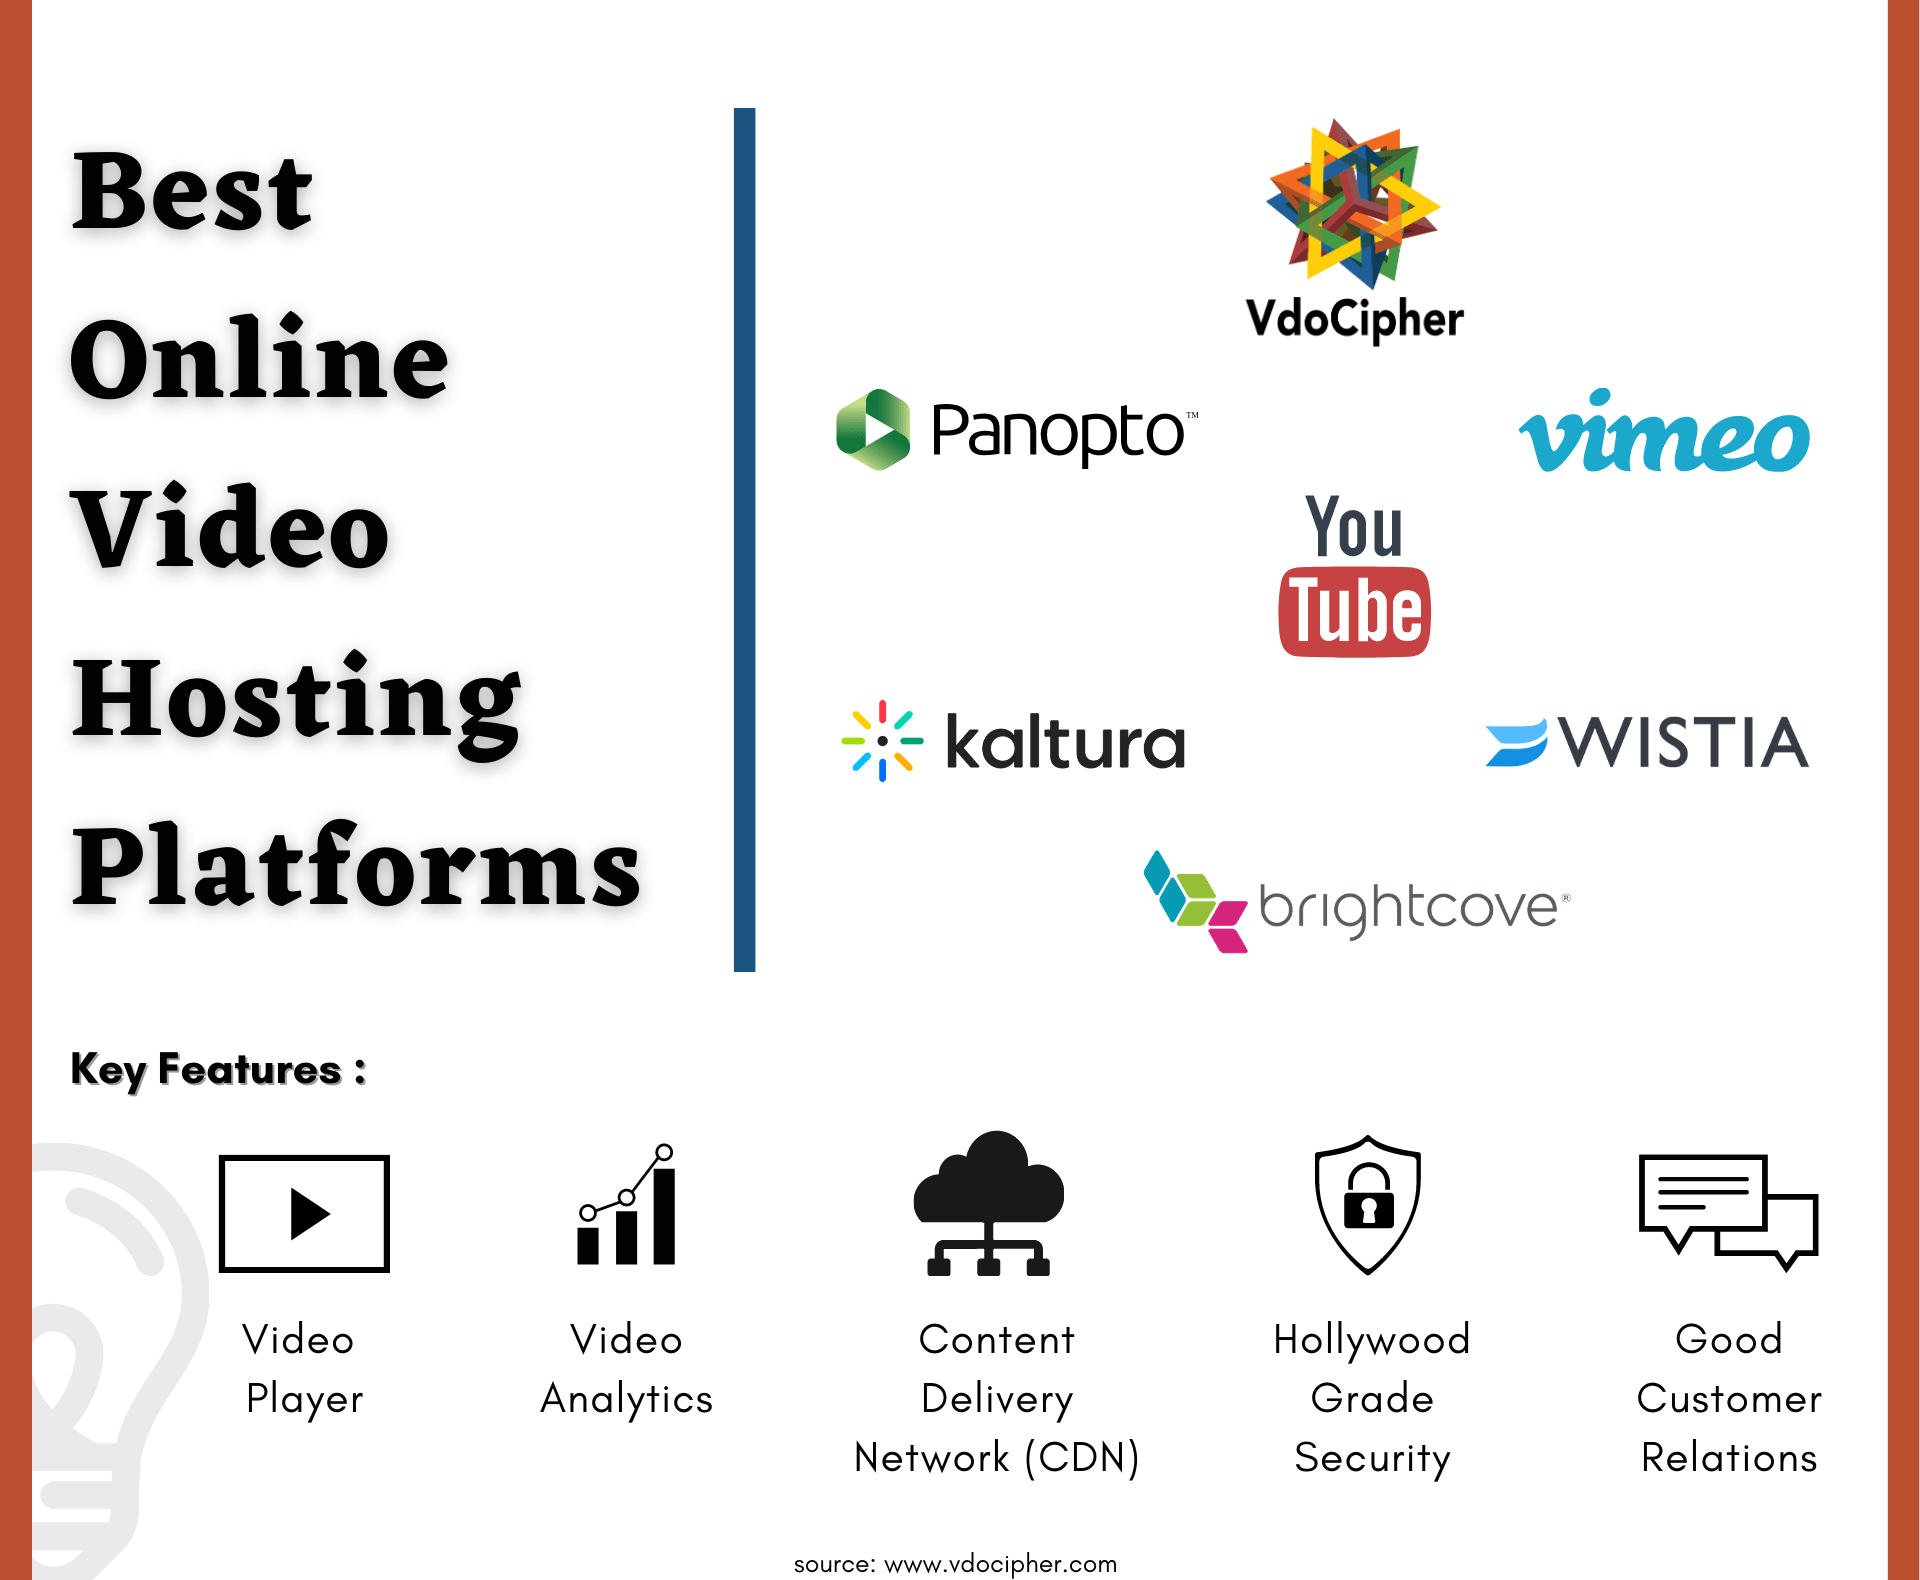 Video Hosting Platform, видеохостинга